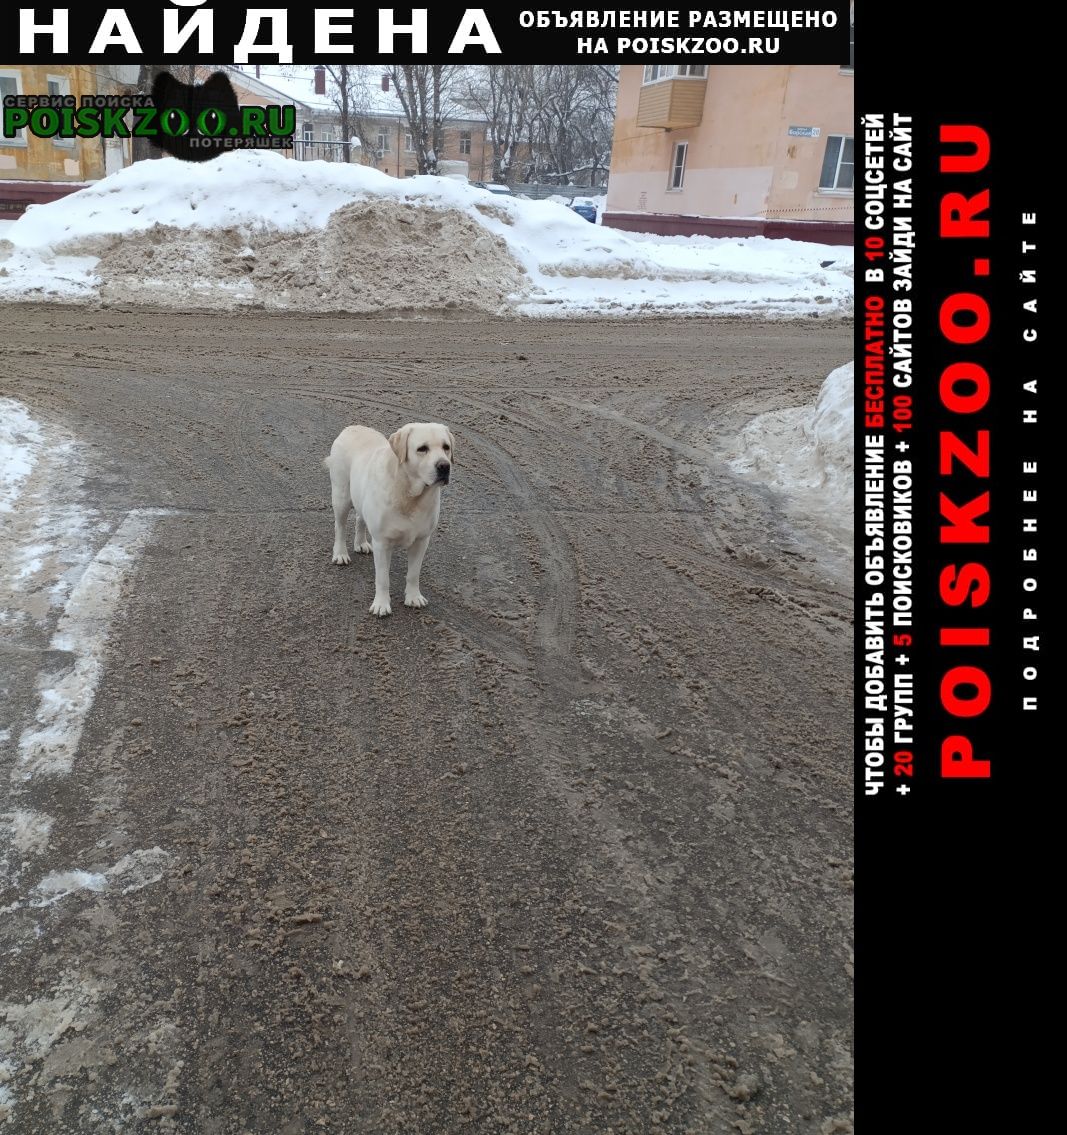 Найдена собака кобель лабрадор без ошейника был на ул. борская Нижний Новгород